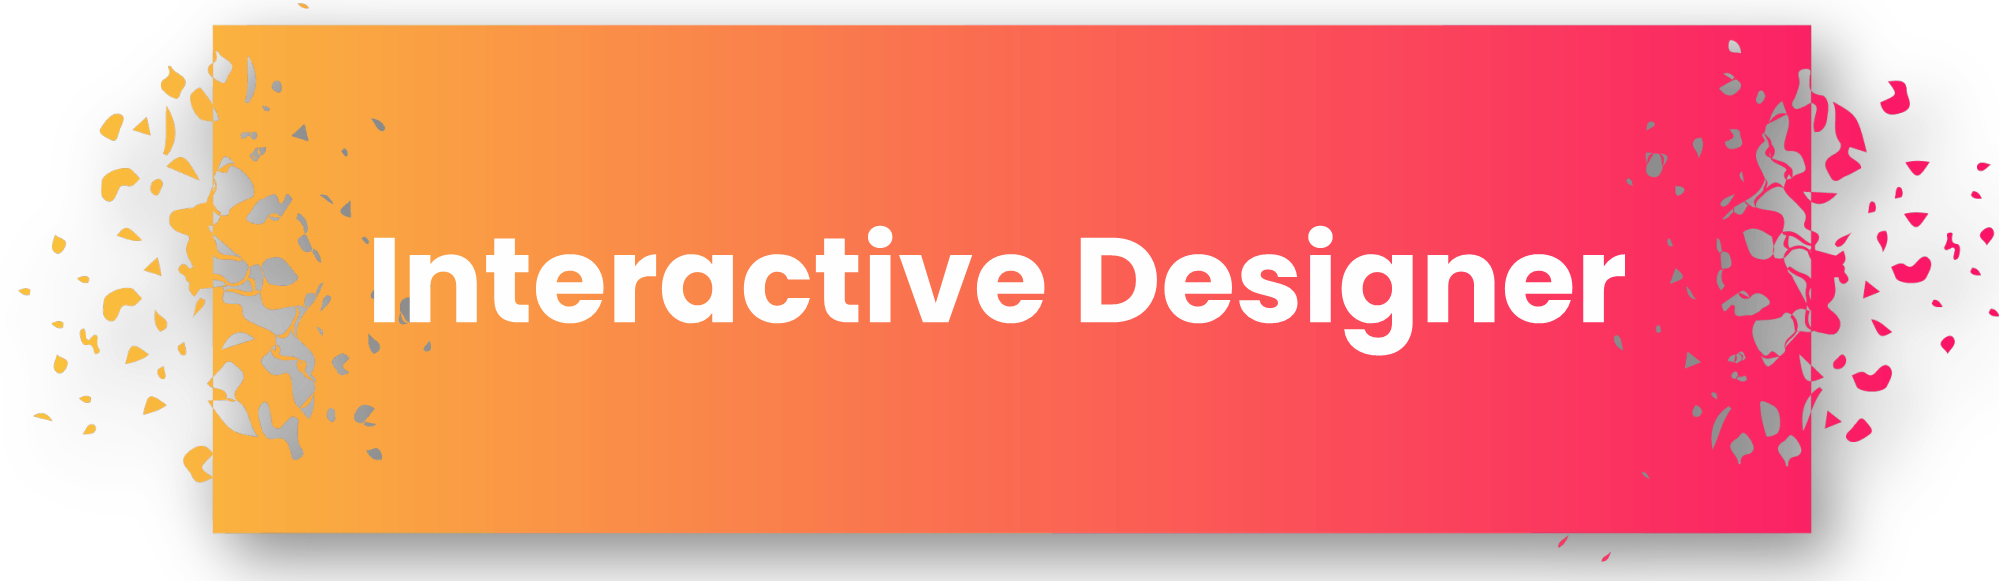 Interactive Designer